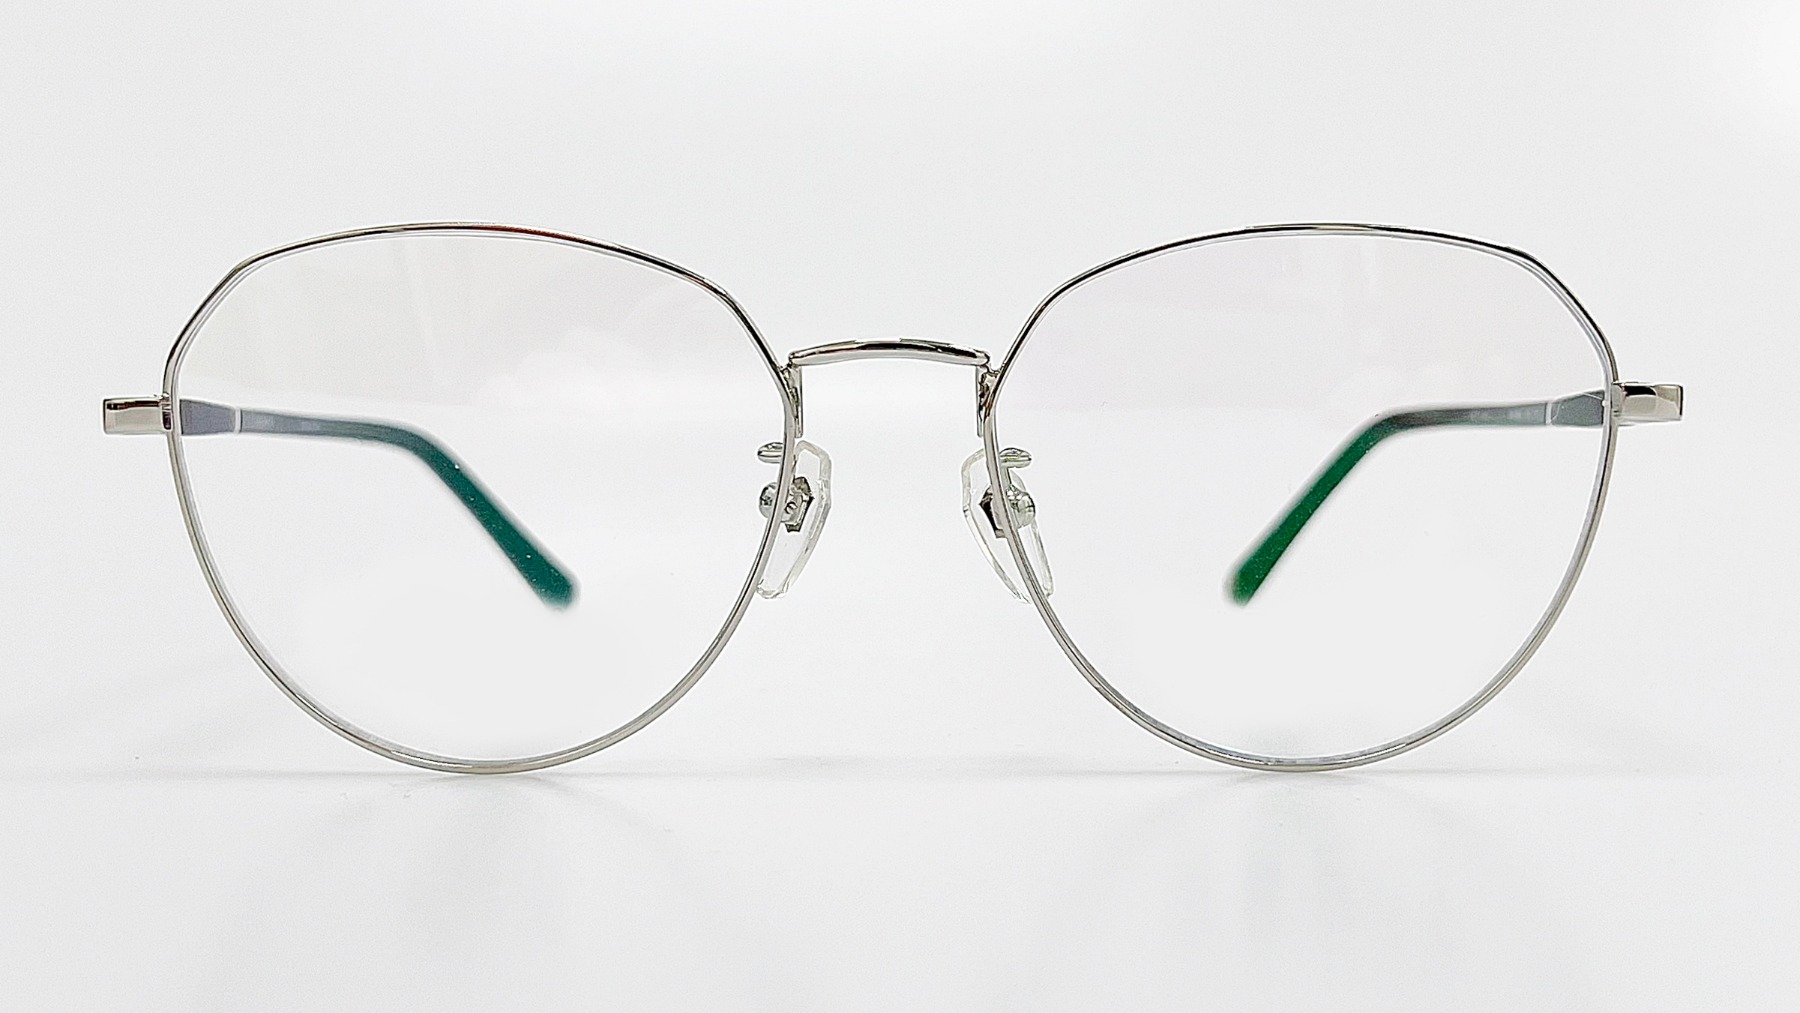 HORIEN_HN8096, Korean glasses, sunglasses, eyeglasses, glasses